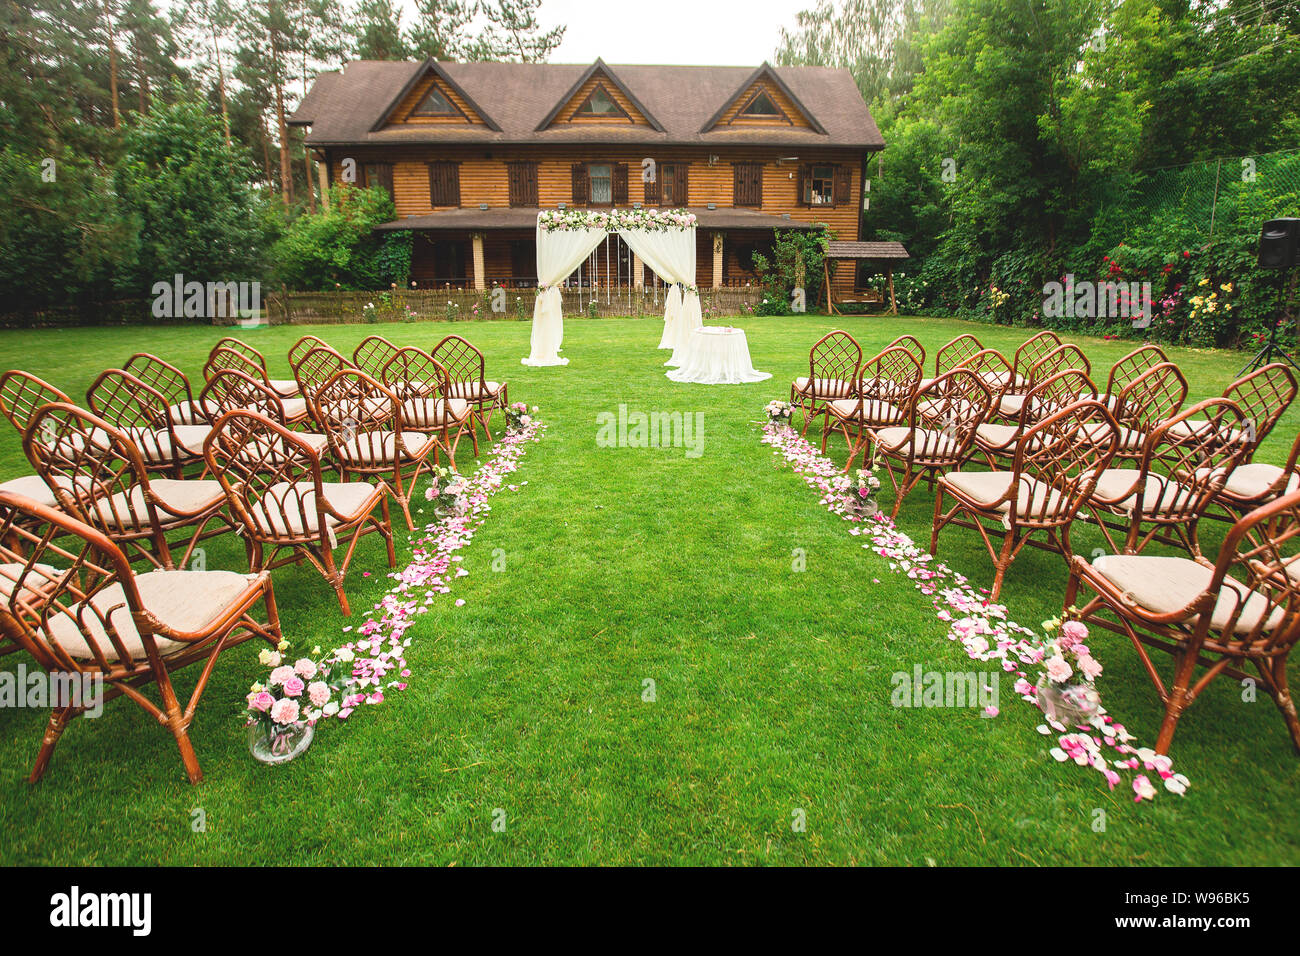 Outdoor cerimonia nuziale decorazione setup. Percorso con petali, sedie decorate con nastri colorati, bianco arch. concetto di matrimonio Foto Stock